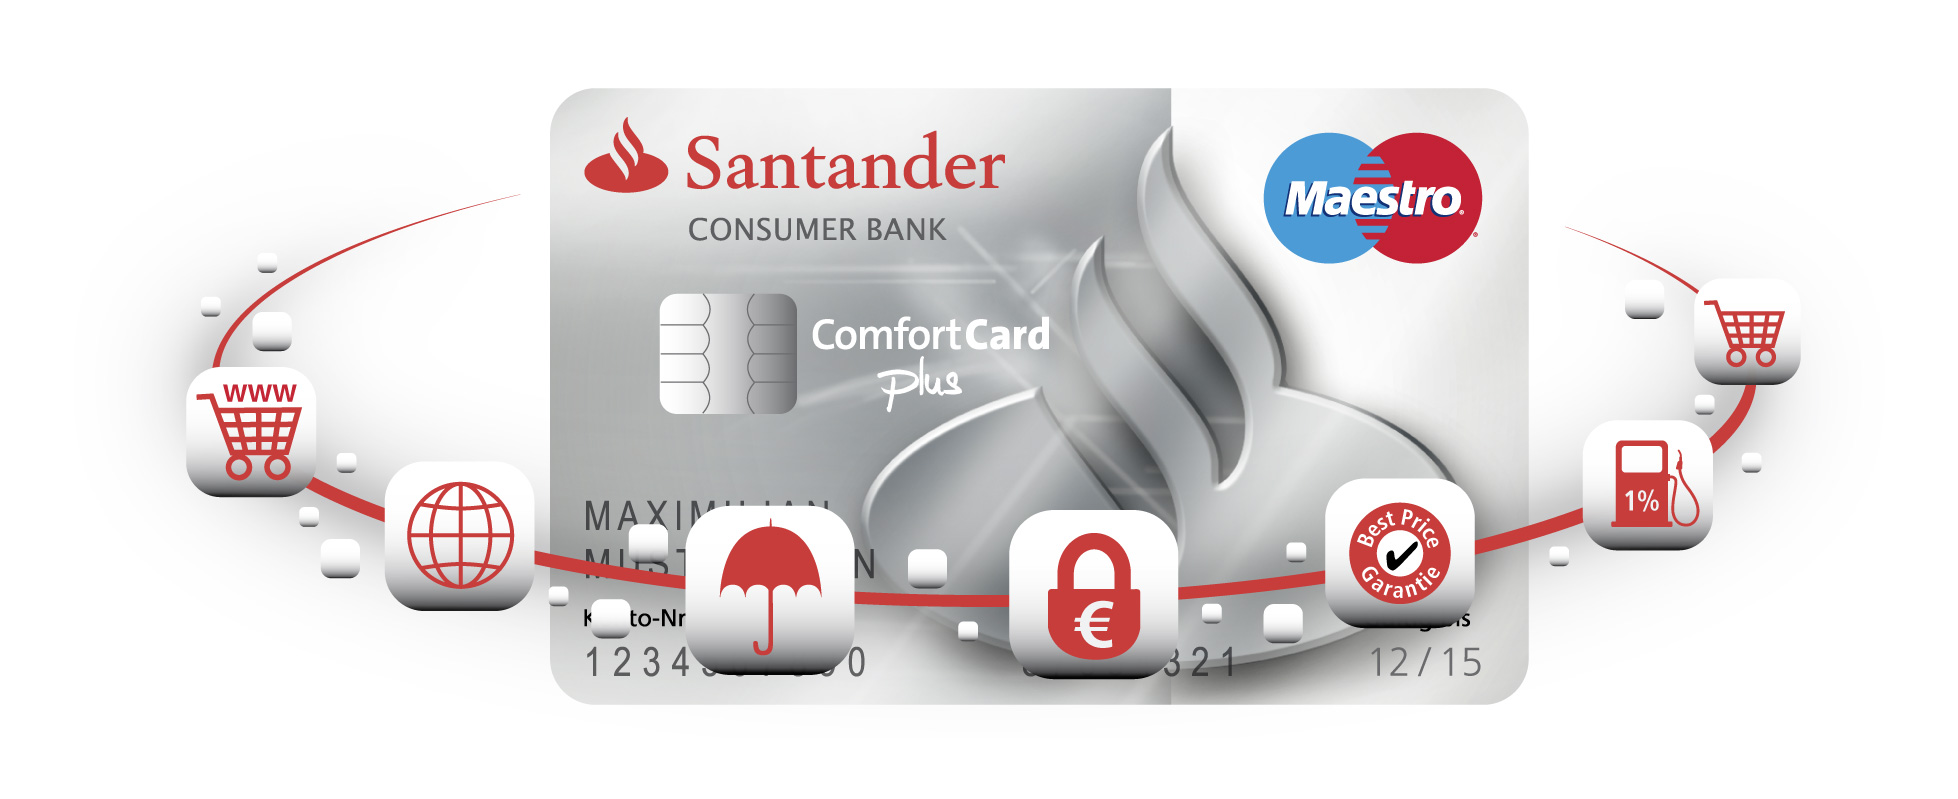 Santander: Neue ComfortCard plus ermöglicht flexiblen ...